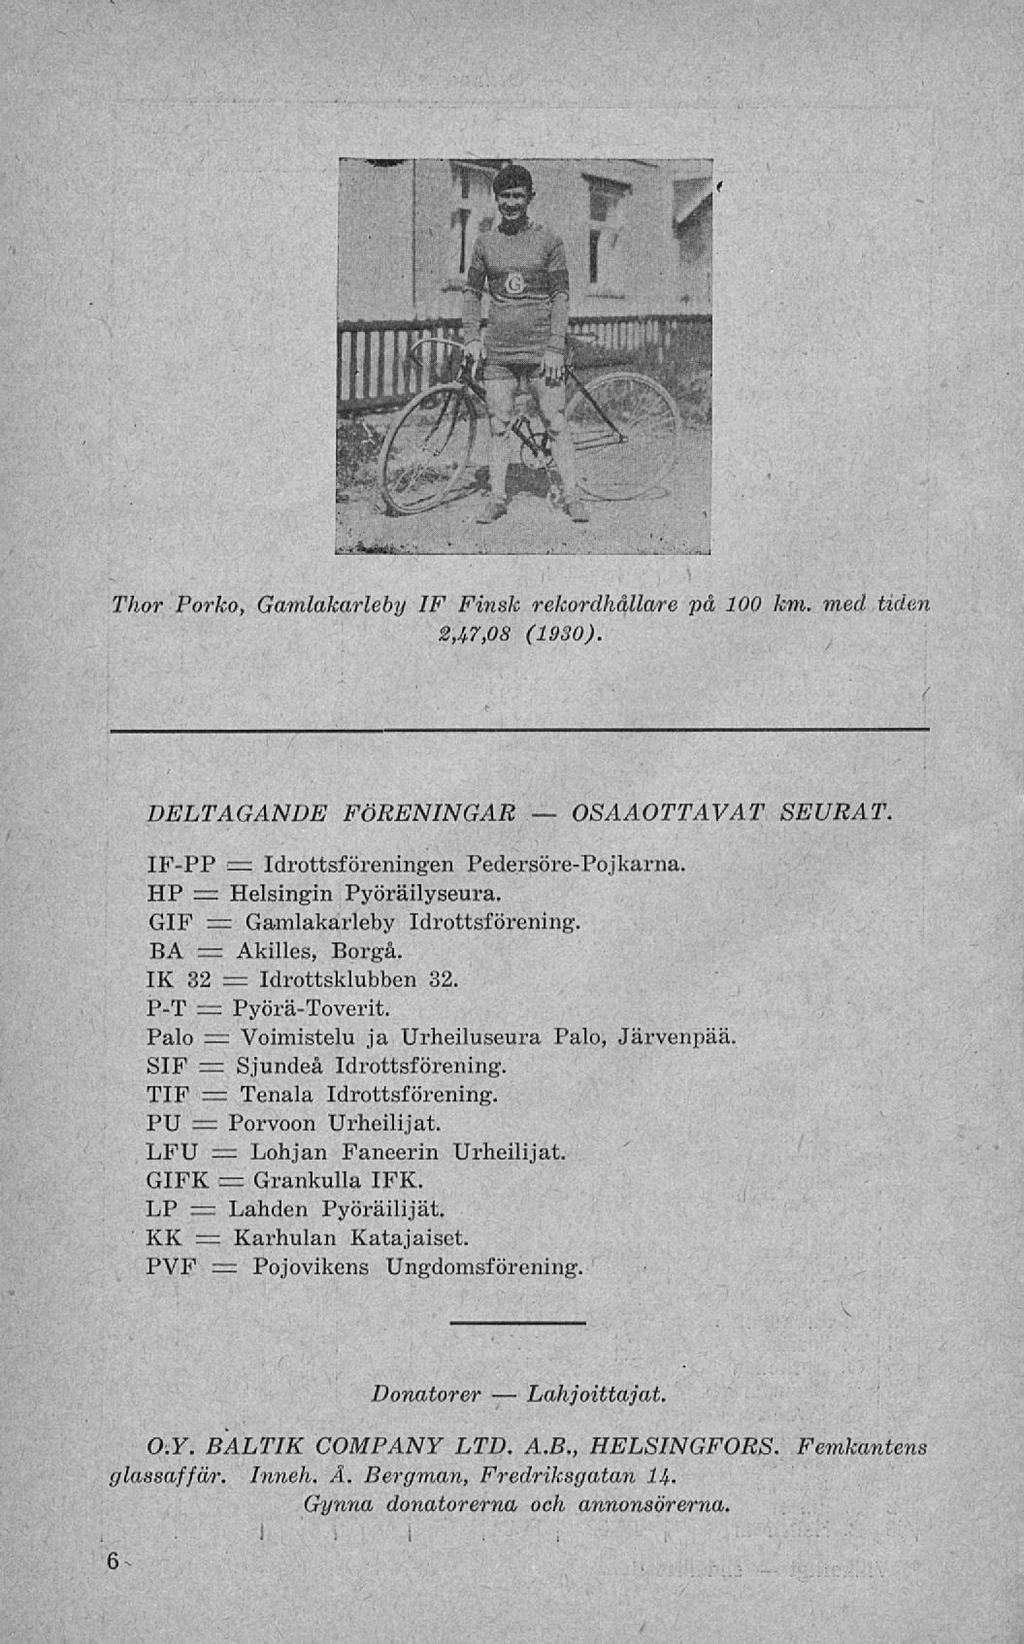 OSAAOTTAVAT i Thor Porko, Gamlakarleby IF Finsk rekordhållare på 100 km. med tiden 2,A7,08 (1930). p < l DELTAGANDE FÖRENINGAR SEURAT.,< i.-'-' IF-PP c Idrottsföreningen Pedersöre-Pojkarna.